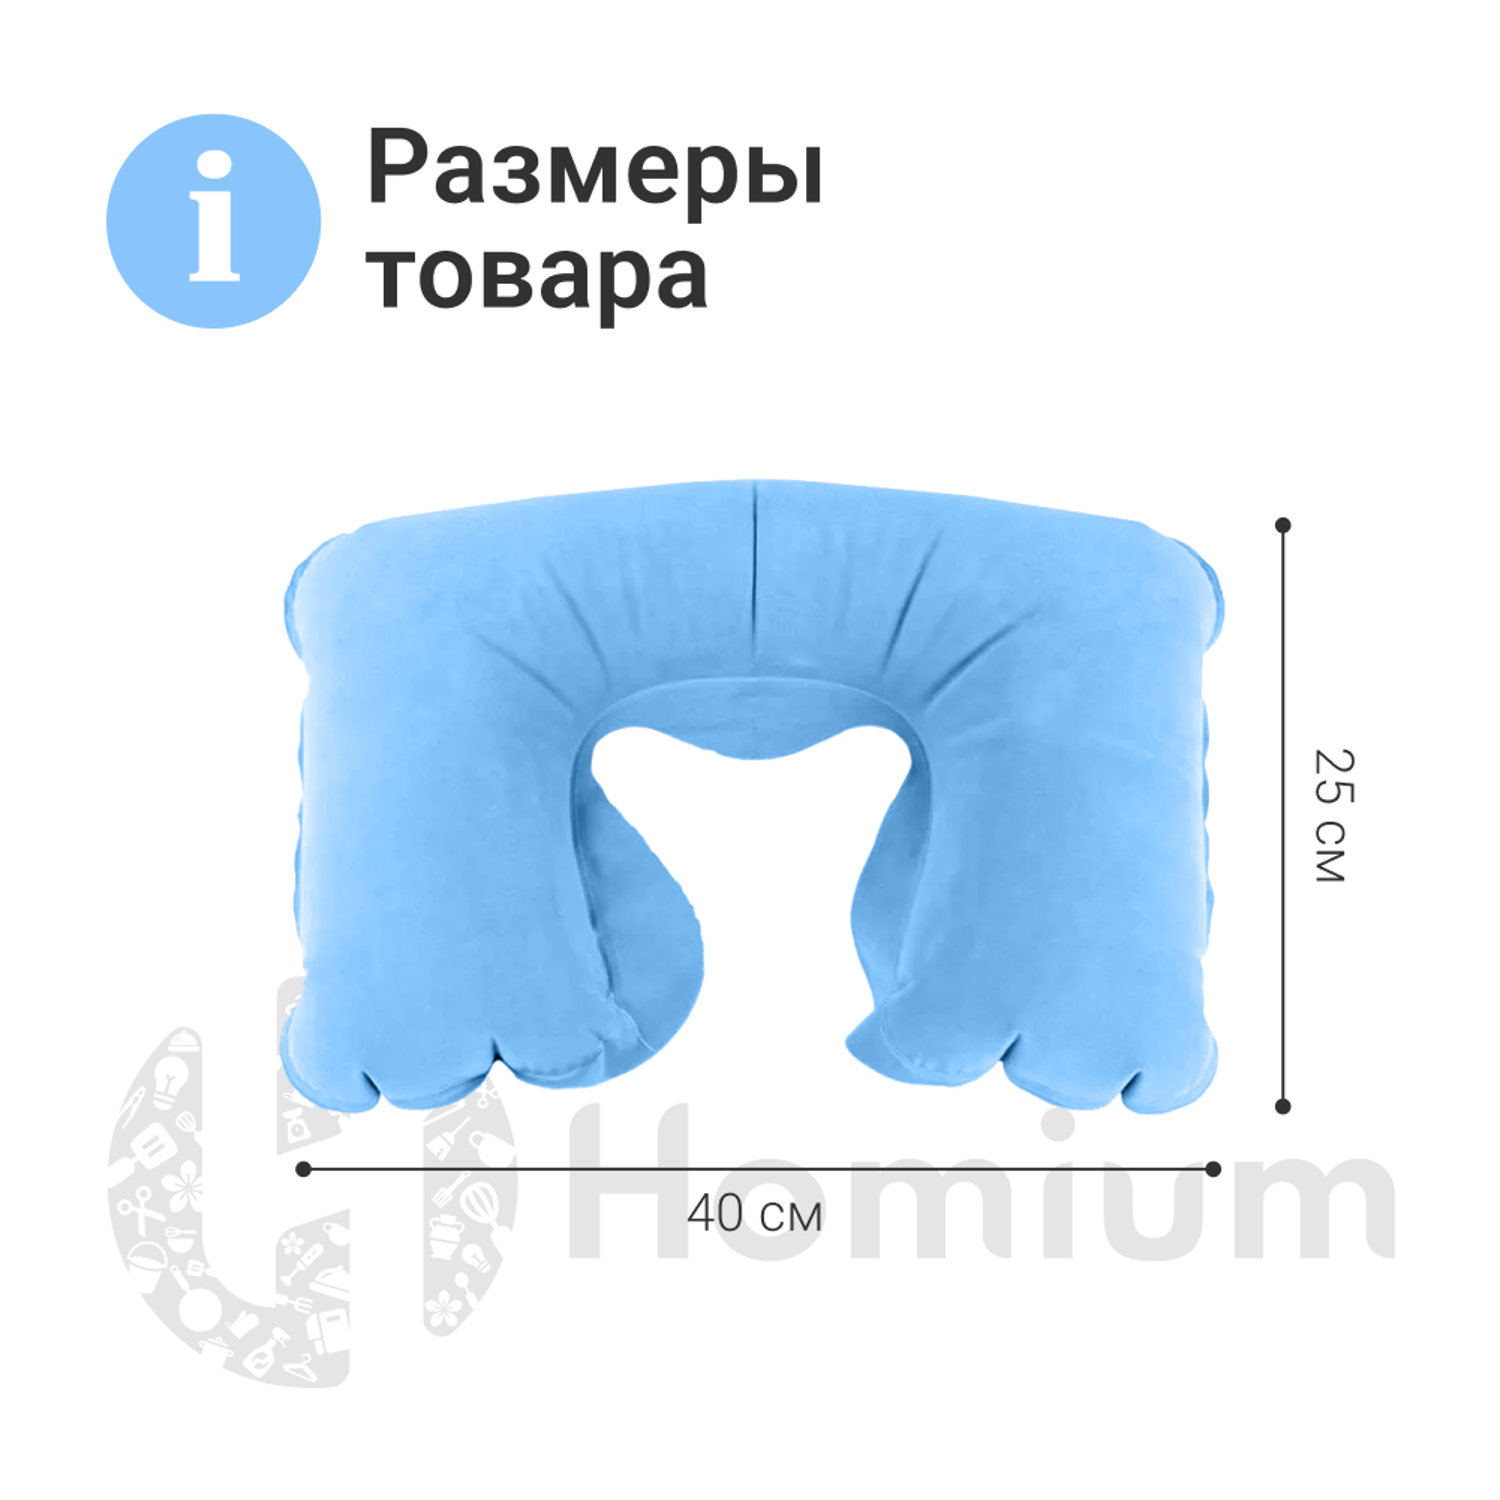 Подушка надувная ZDK Homium Travel Comfort дорожная цвет голубой - фото 8